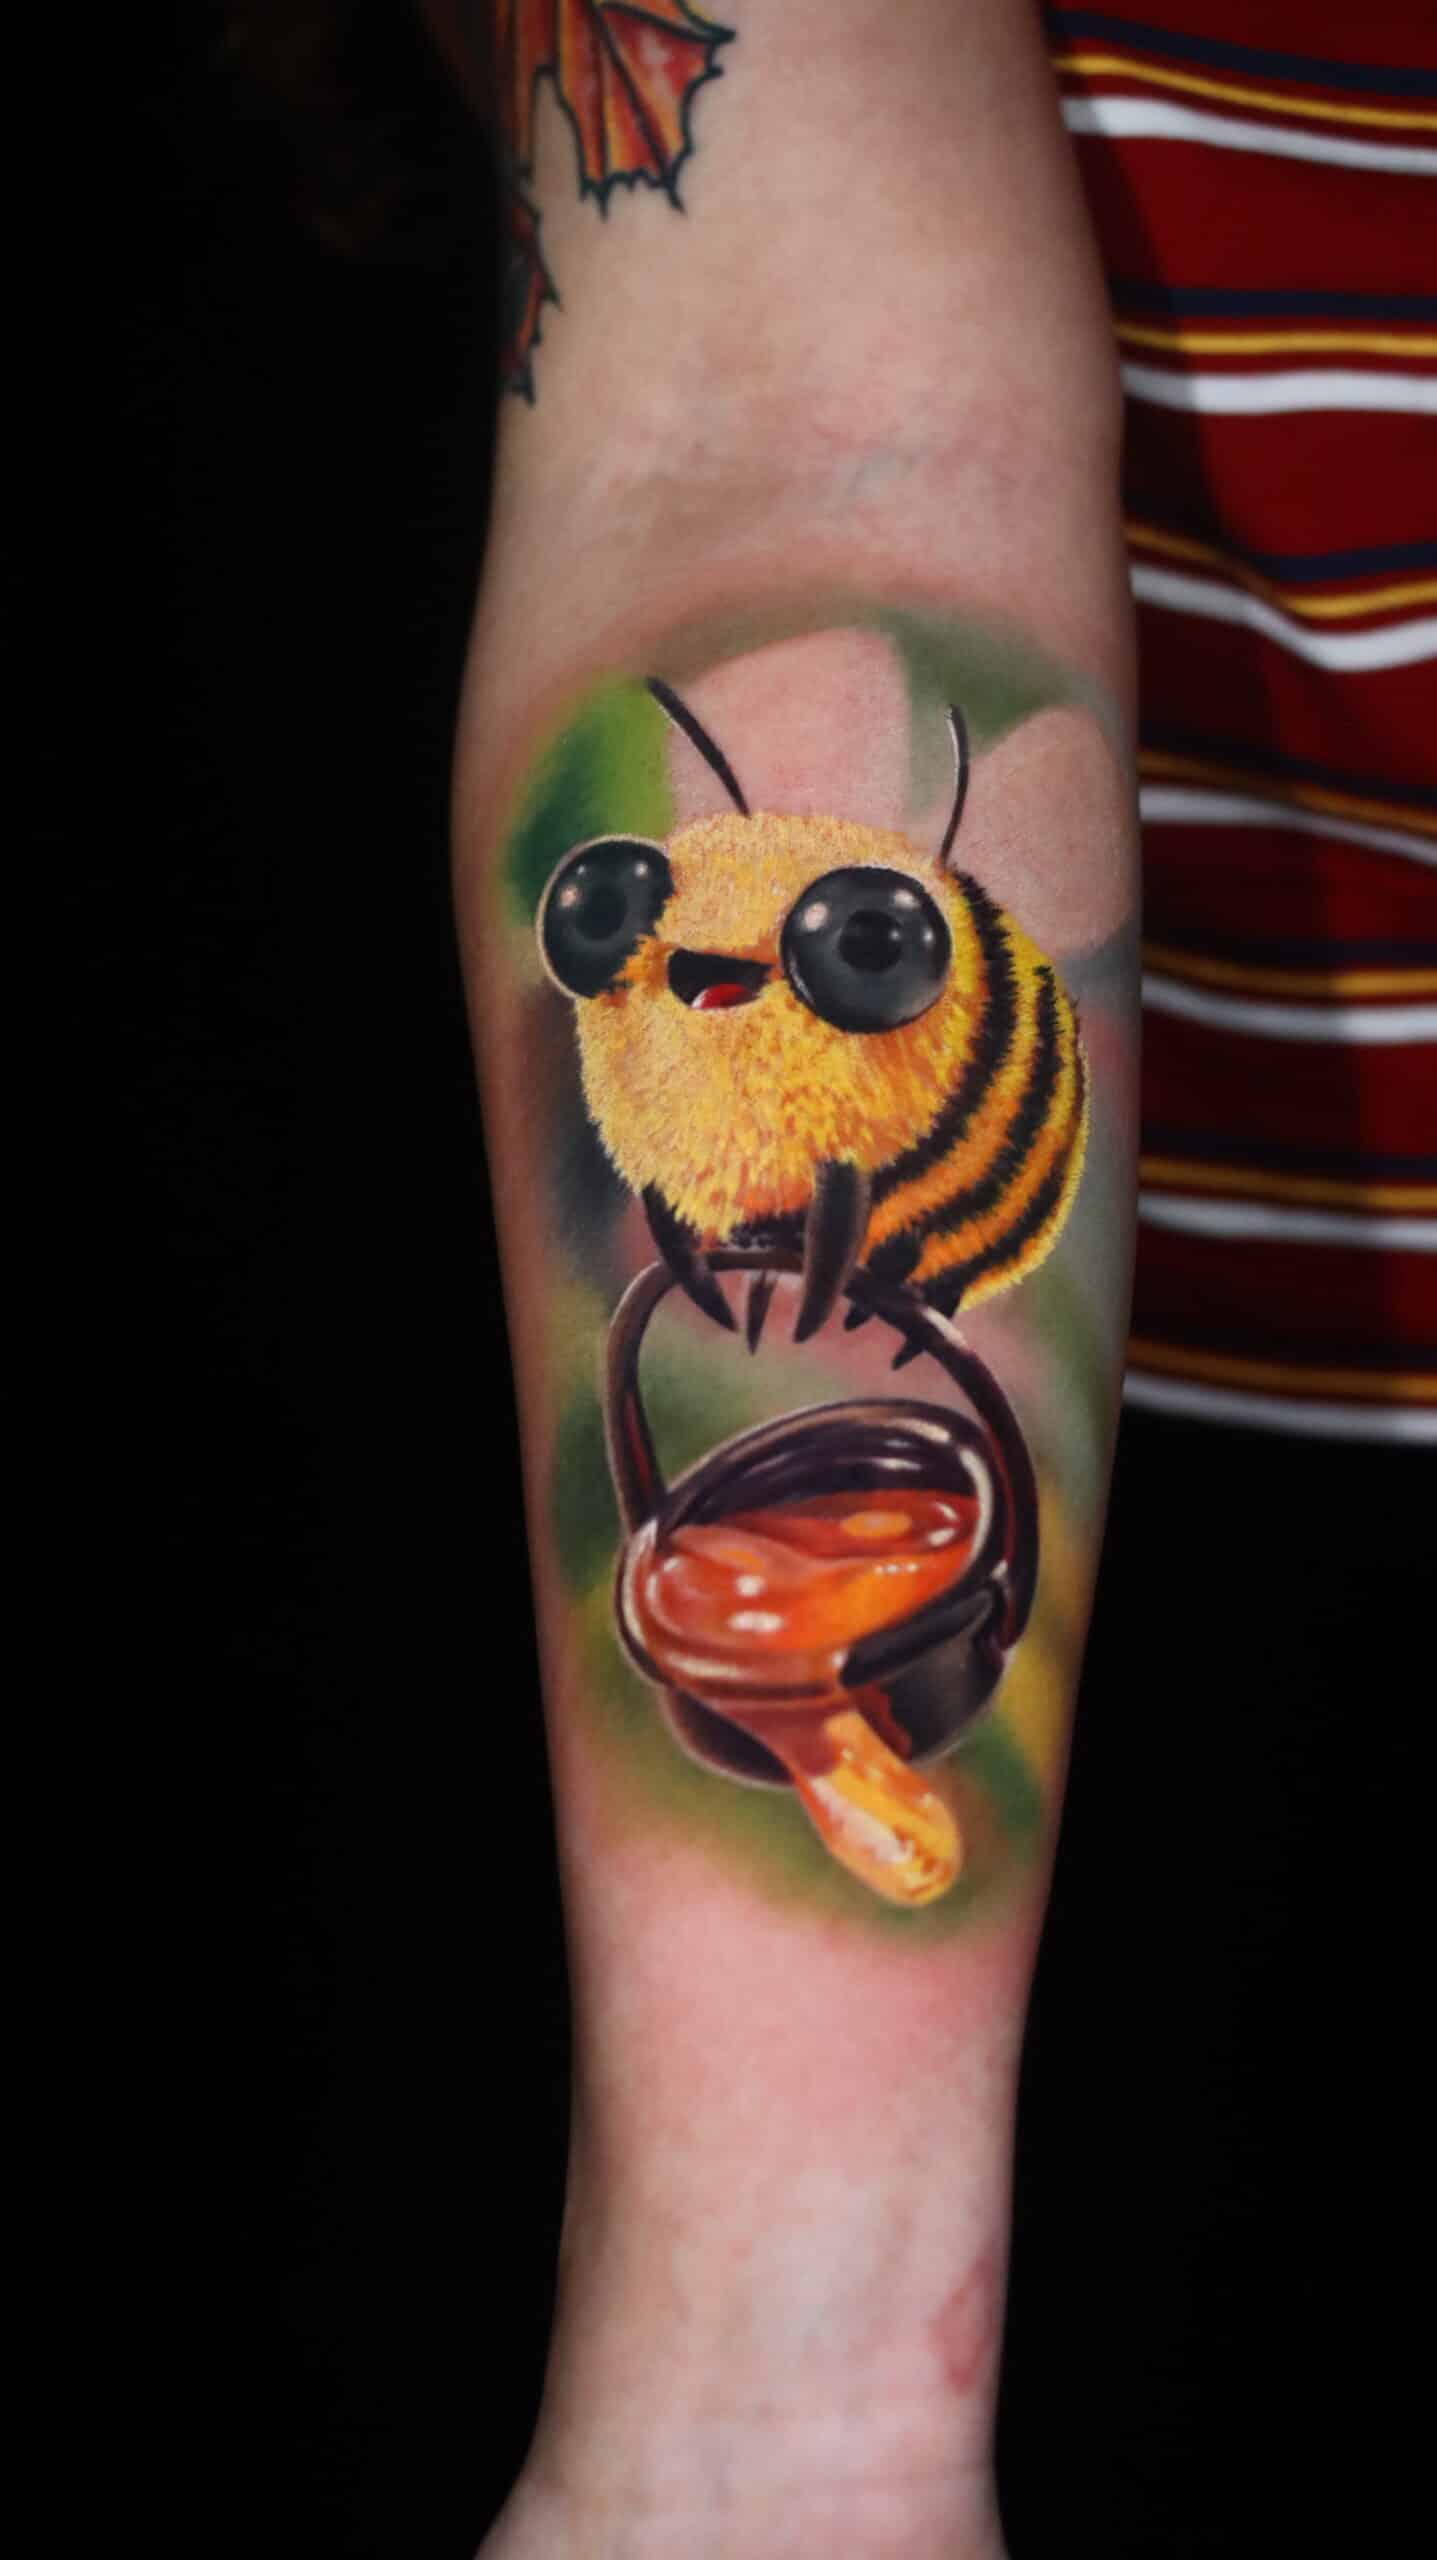 Honeybee tattoo